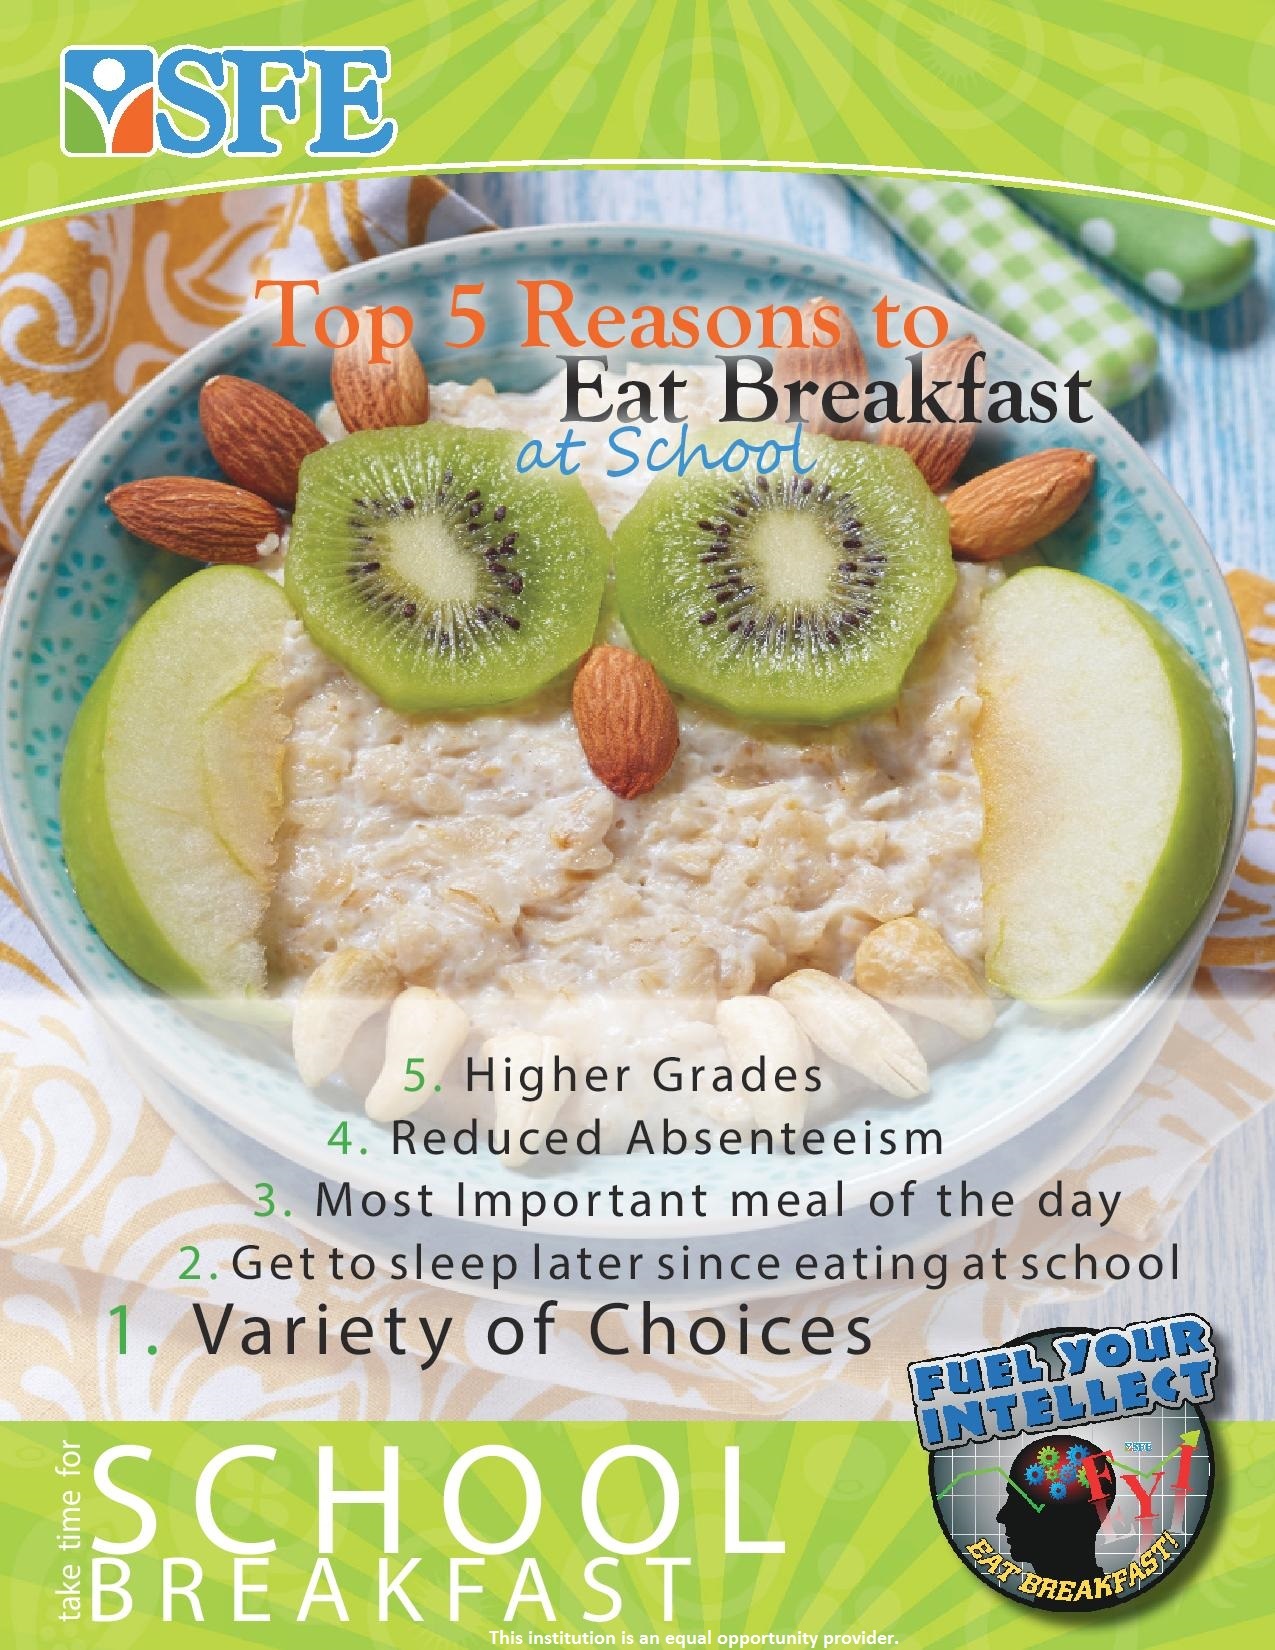 Top 5 Reasons to eat breakfast at school